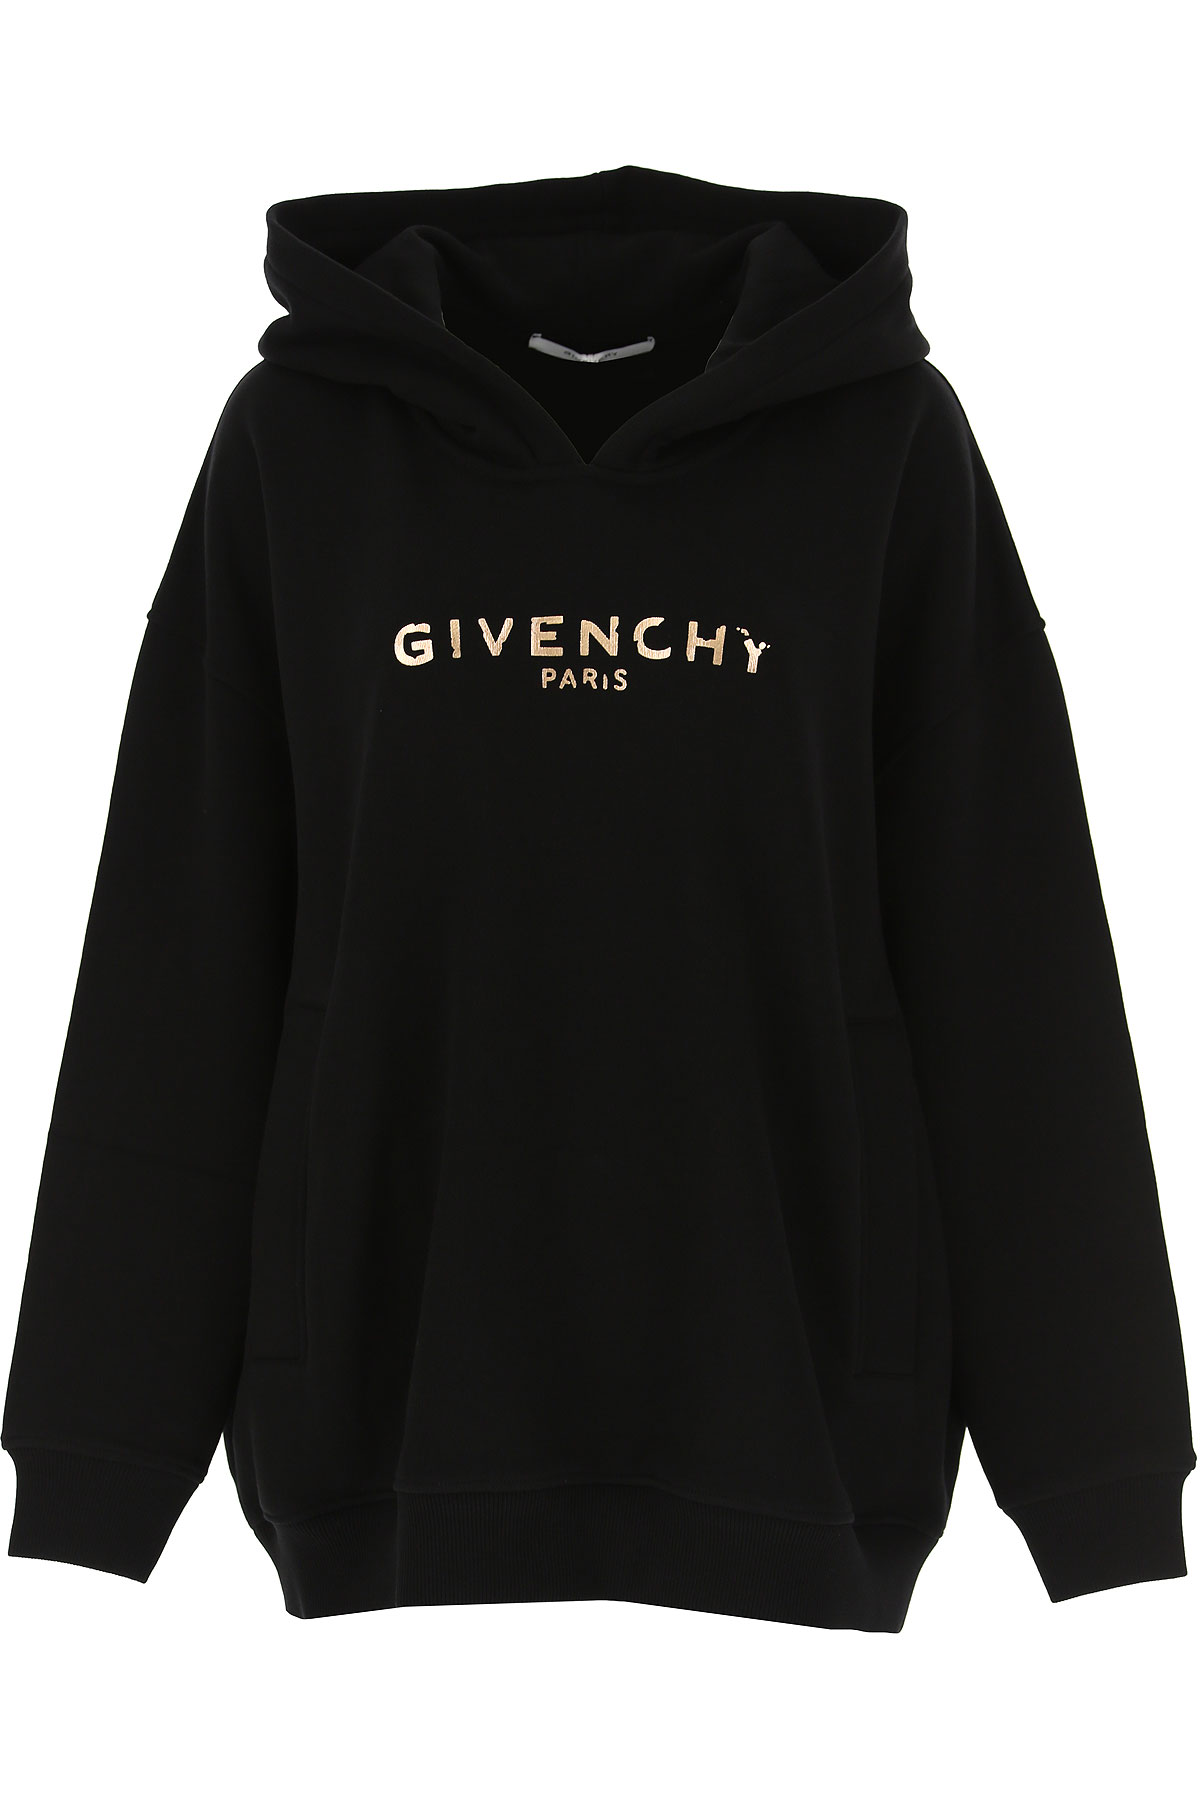 Givenchy Sweatshirt für Damen, Kapuzenpulli, Hoodie, Sweats Günstig im Sale, Schwarz, Baumwolle, 2017, 40 M